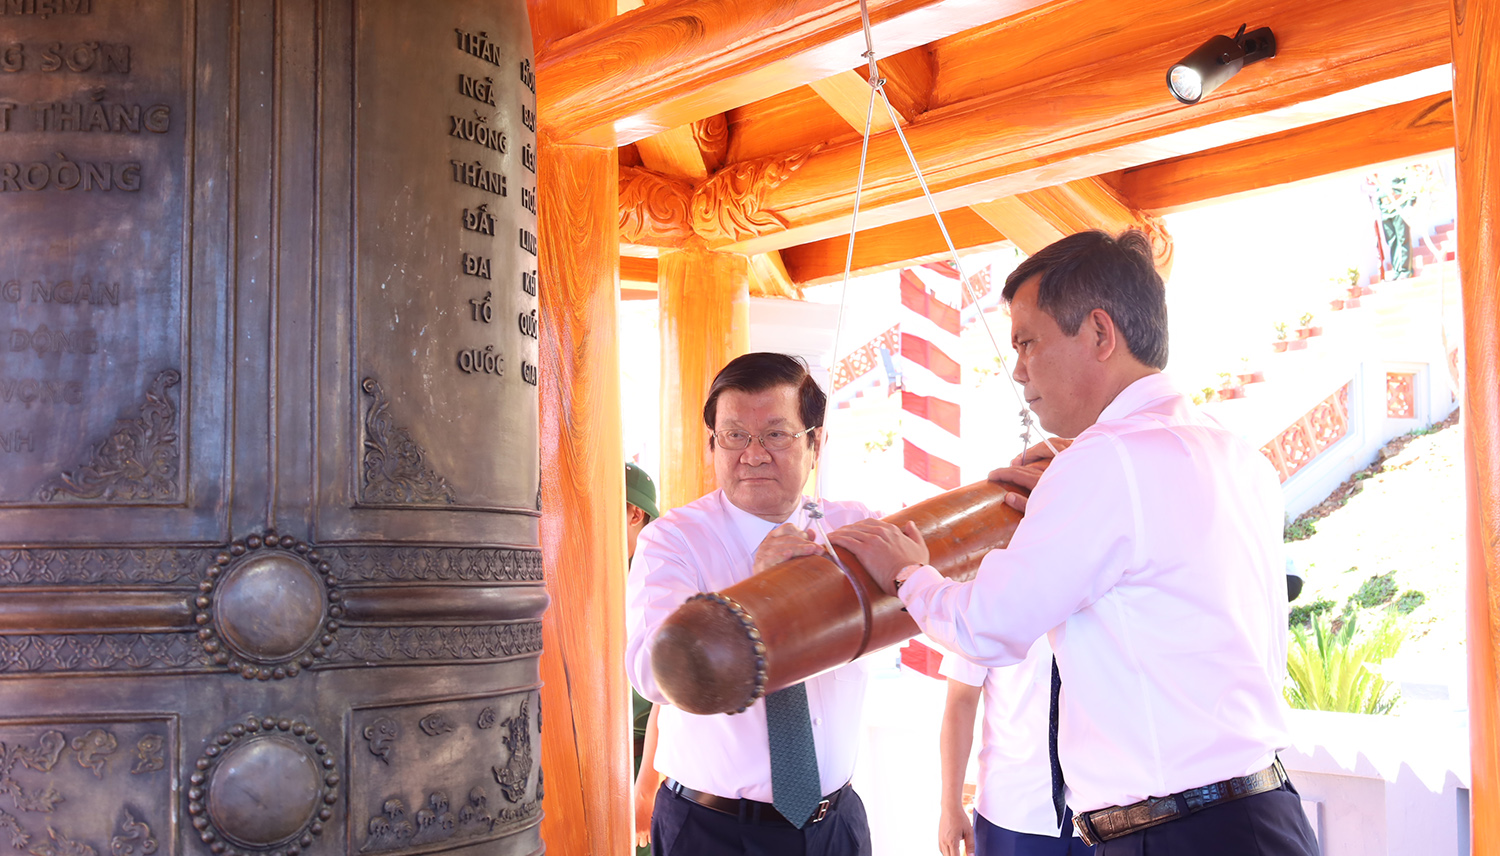 Đồng chí nguyên Chủ tịch nước Trương Tấn Sang và đồng chí Chủ tịch UBND tỉnh Trần Thắng thực hiện nghi thức thỉnh chuông. 